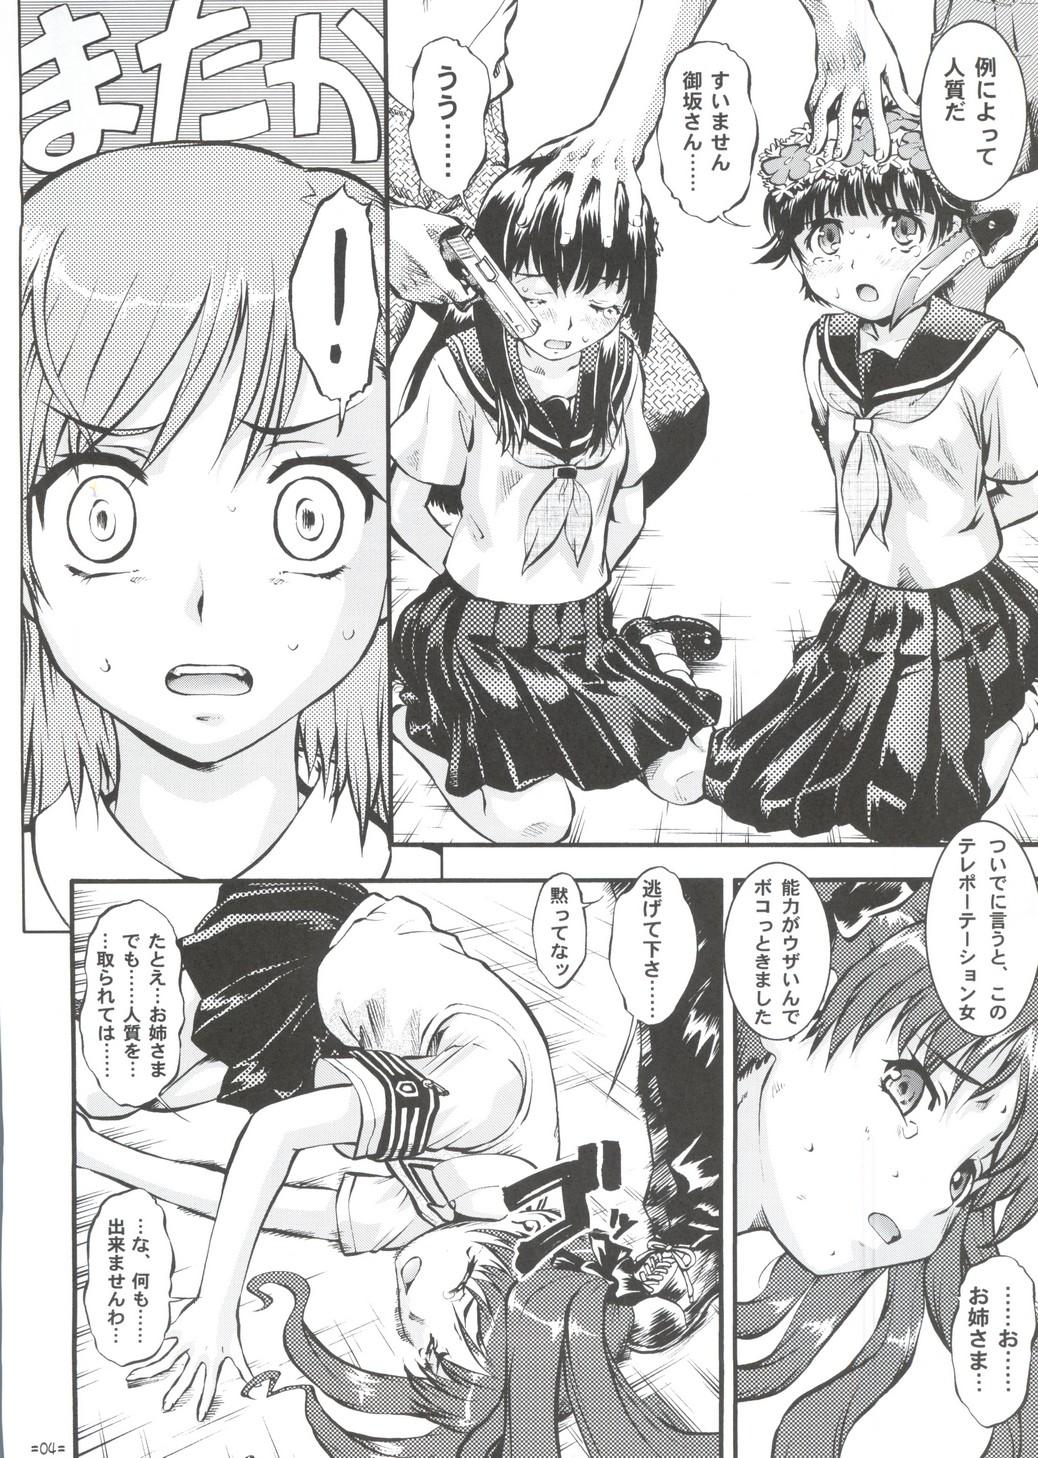 Hardcore Rough Sex W Poron TO-R - Toaru kagaku no railgun Koihime musou Bribe - Page 3